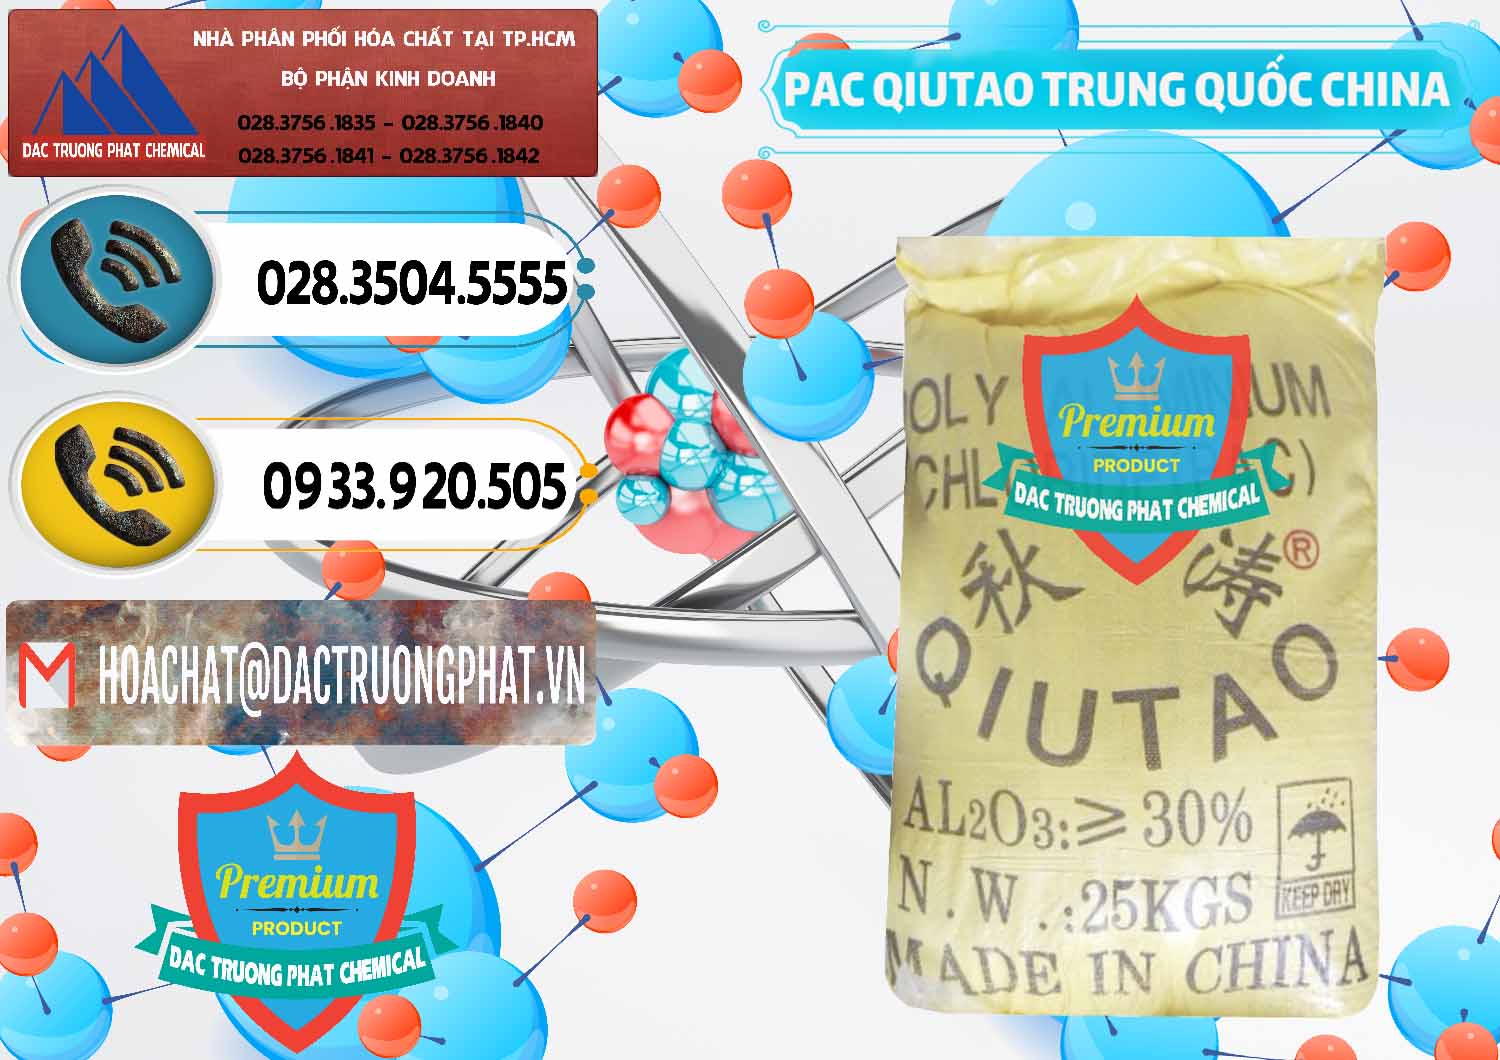 Công ty chuyên bán & cung cấp PAC - Polyaluminium Chloride Qiutao Trung Quốc China - 0267 - Cty chuyên bán và phân phối hóa chất tại TP.HCM - hoachatdetnhuom.vn